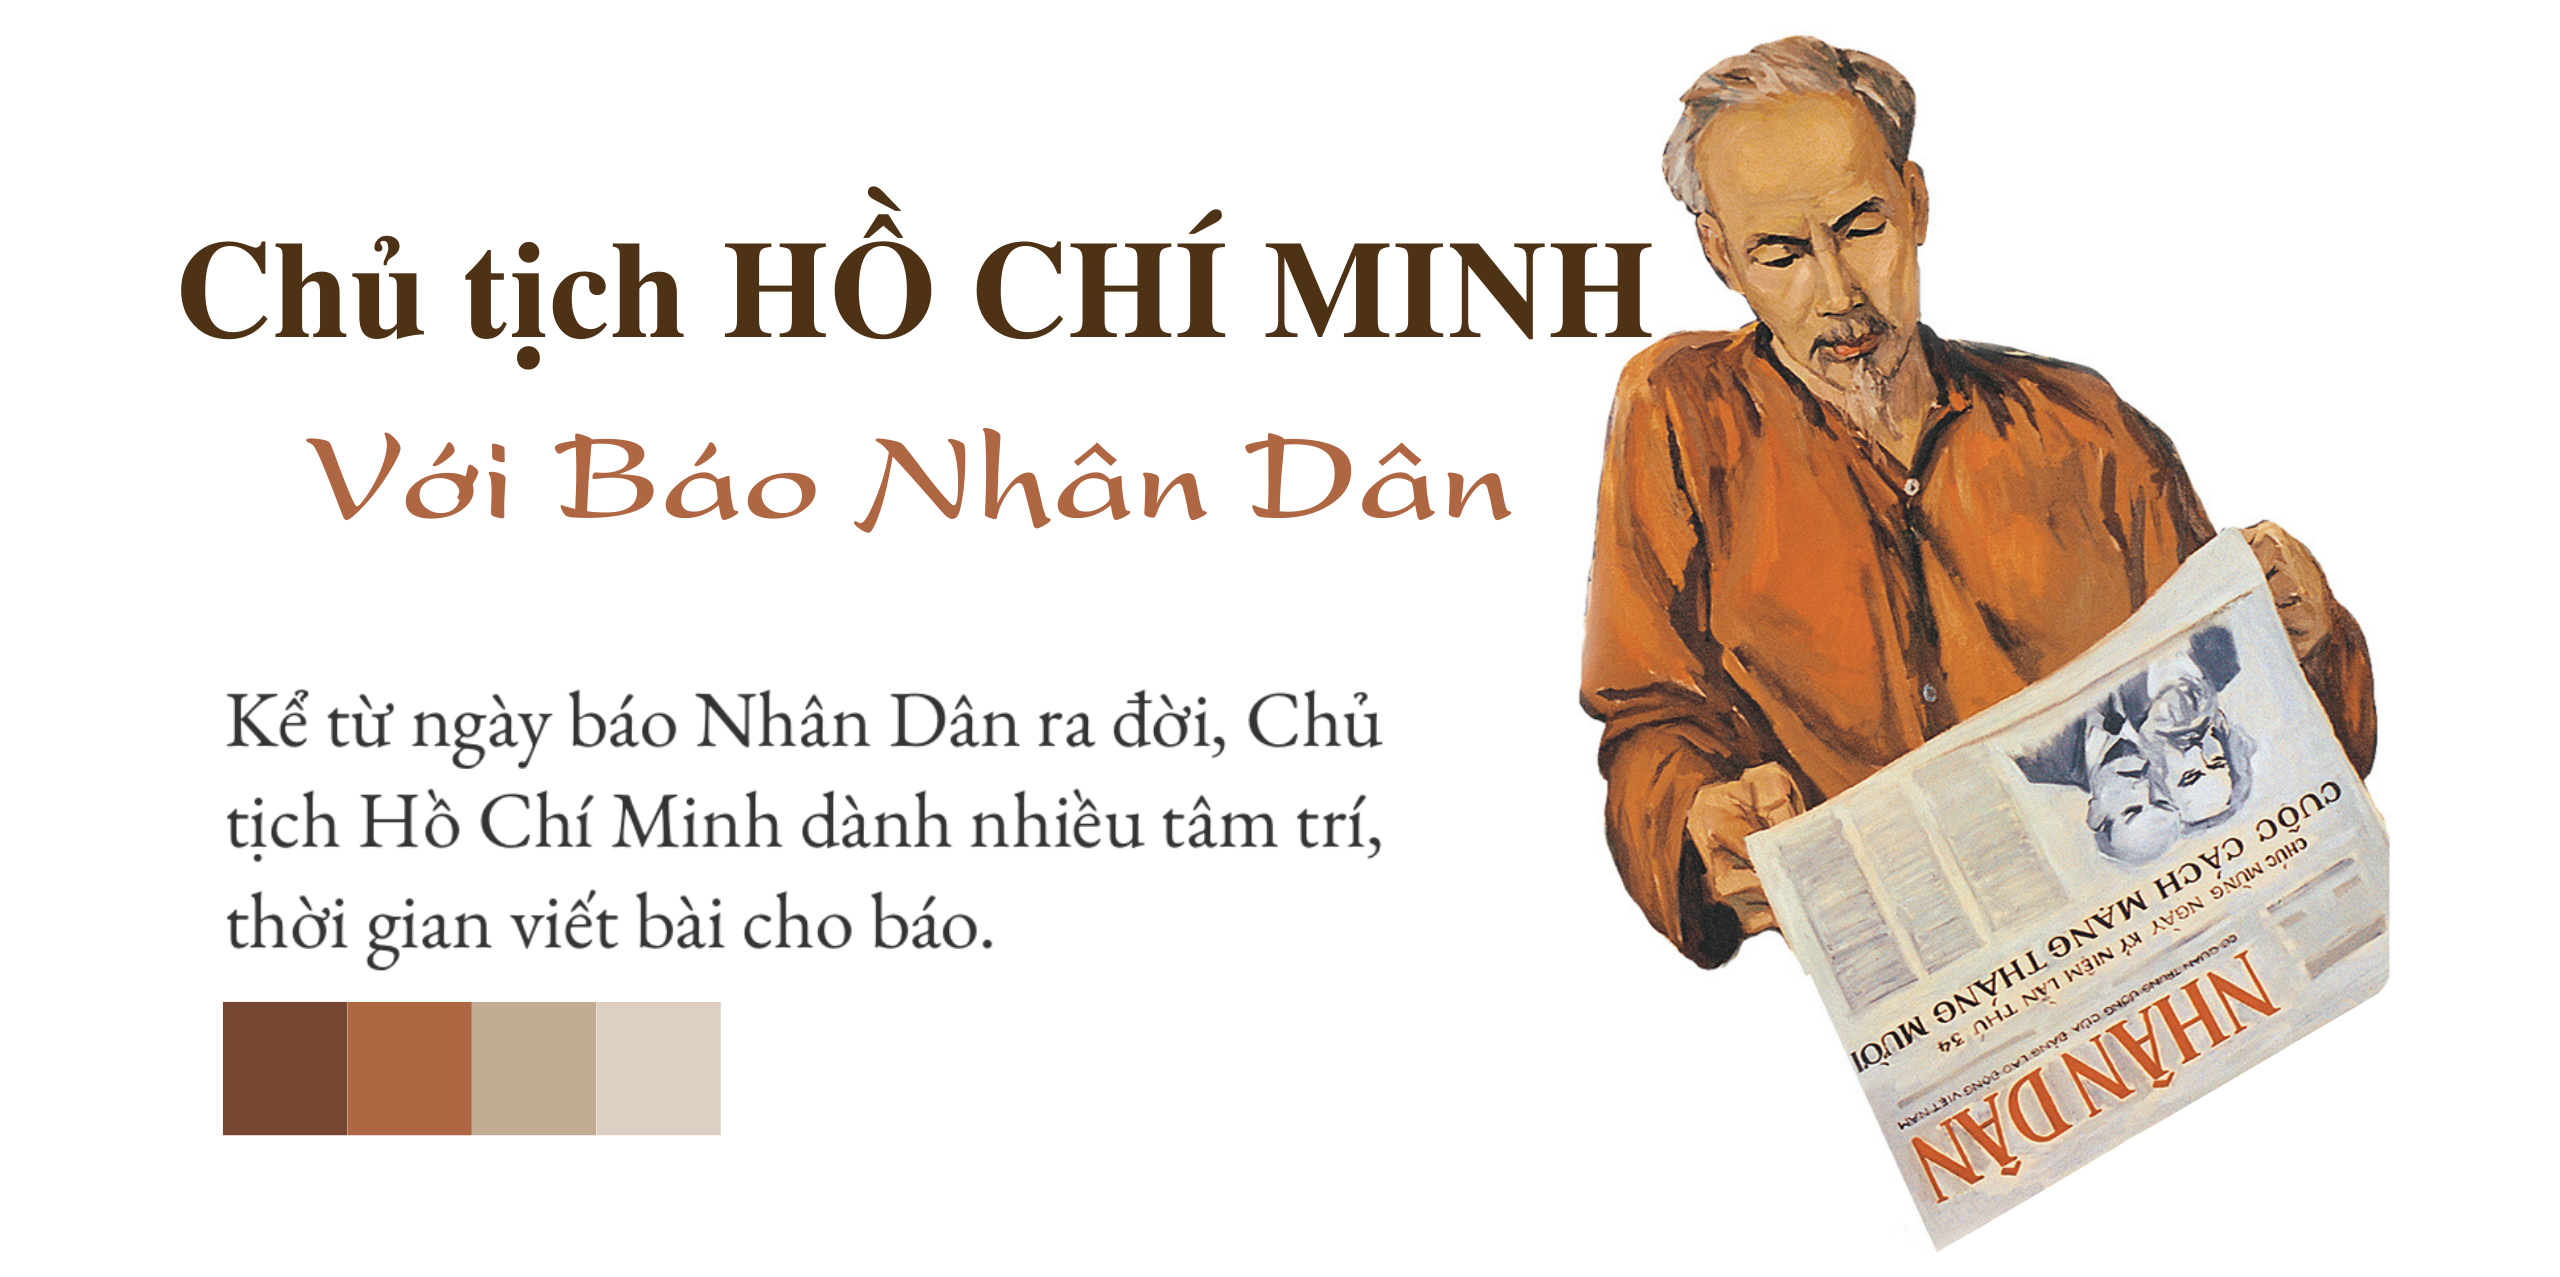 Hồ Chí Minh: Người thầy vĩ đại của người làm báo Cách mạng Việt Nam - ảnh 15